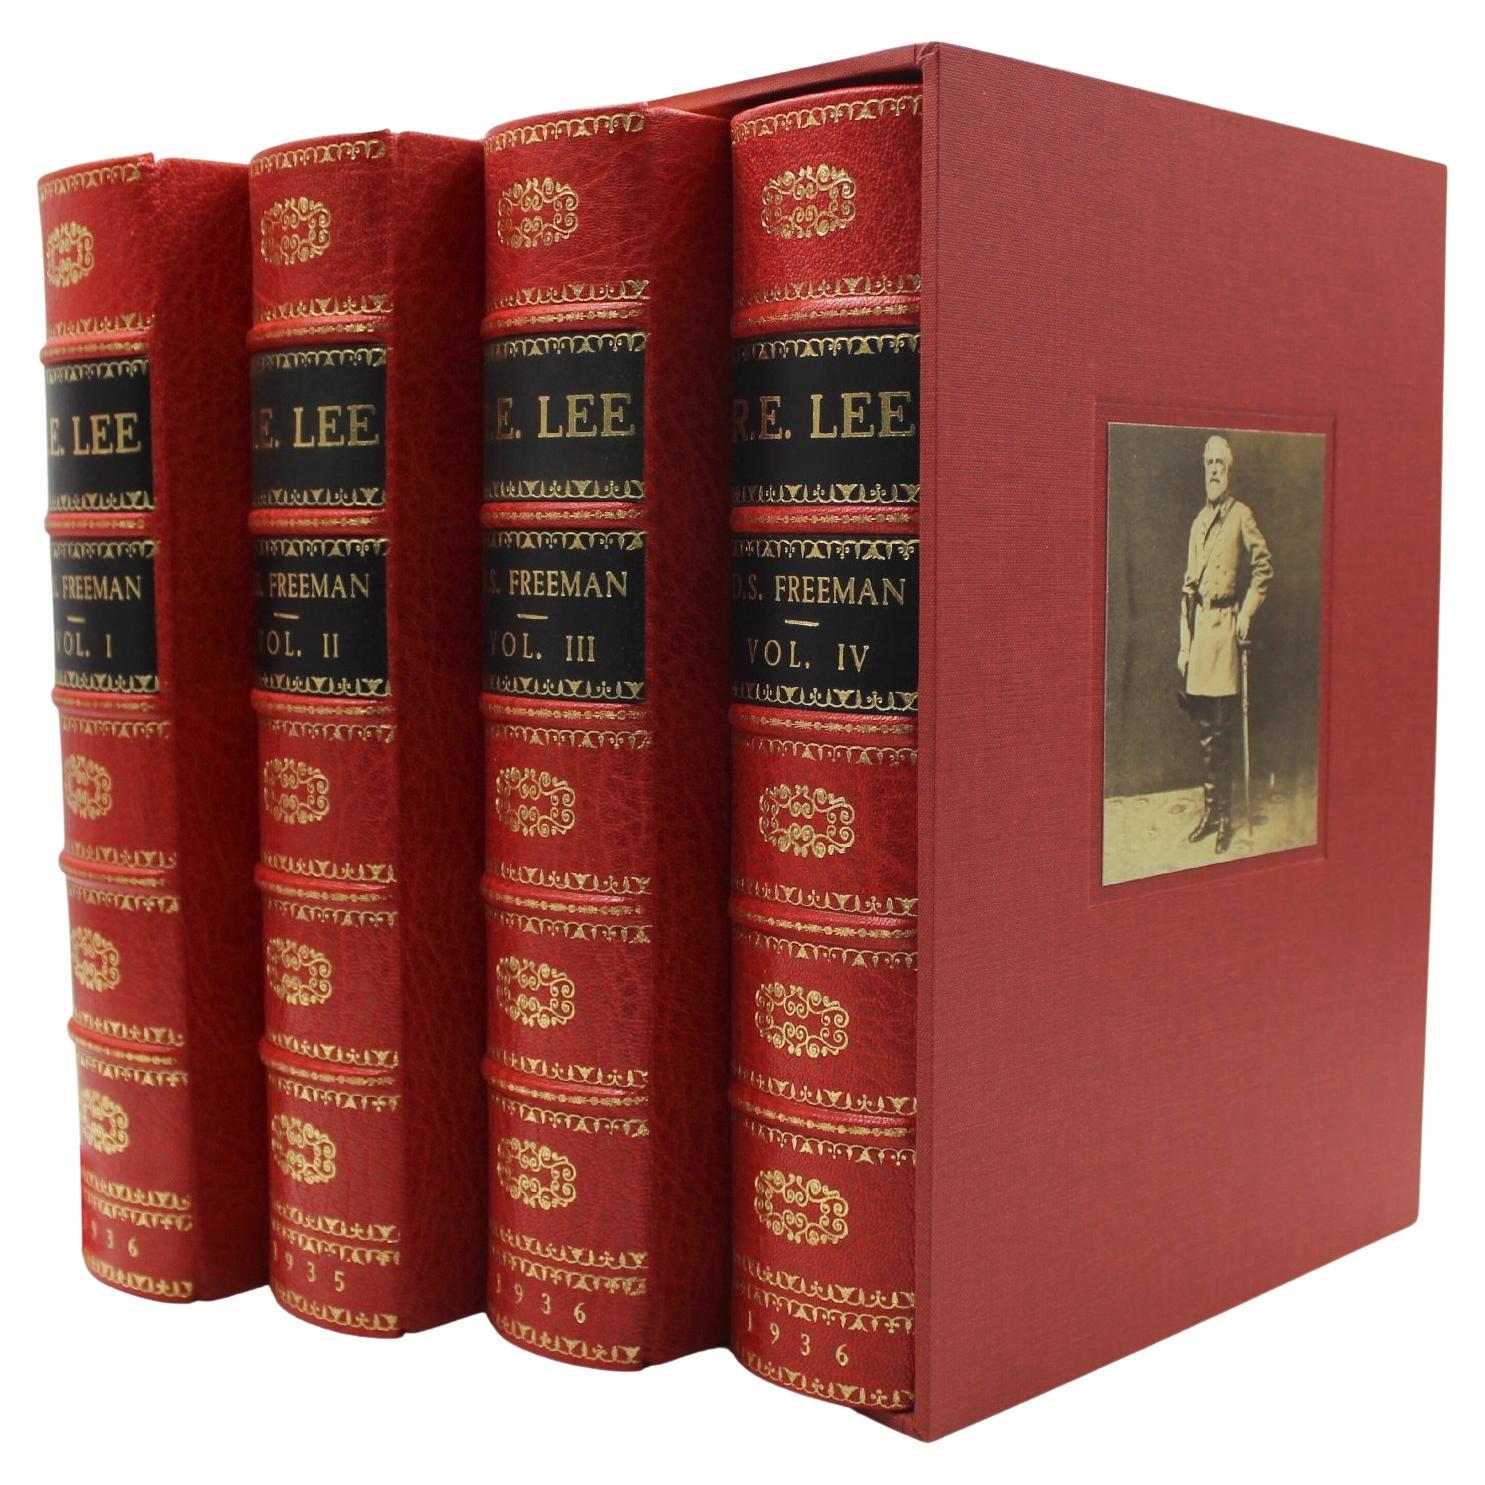 R. E. Lee : Une biographie de Douglas Southhall Freeman, ensemble de quatre volumes, 1936